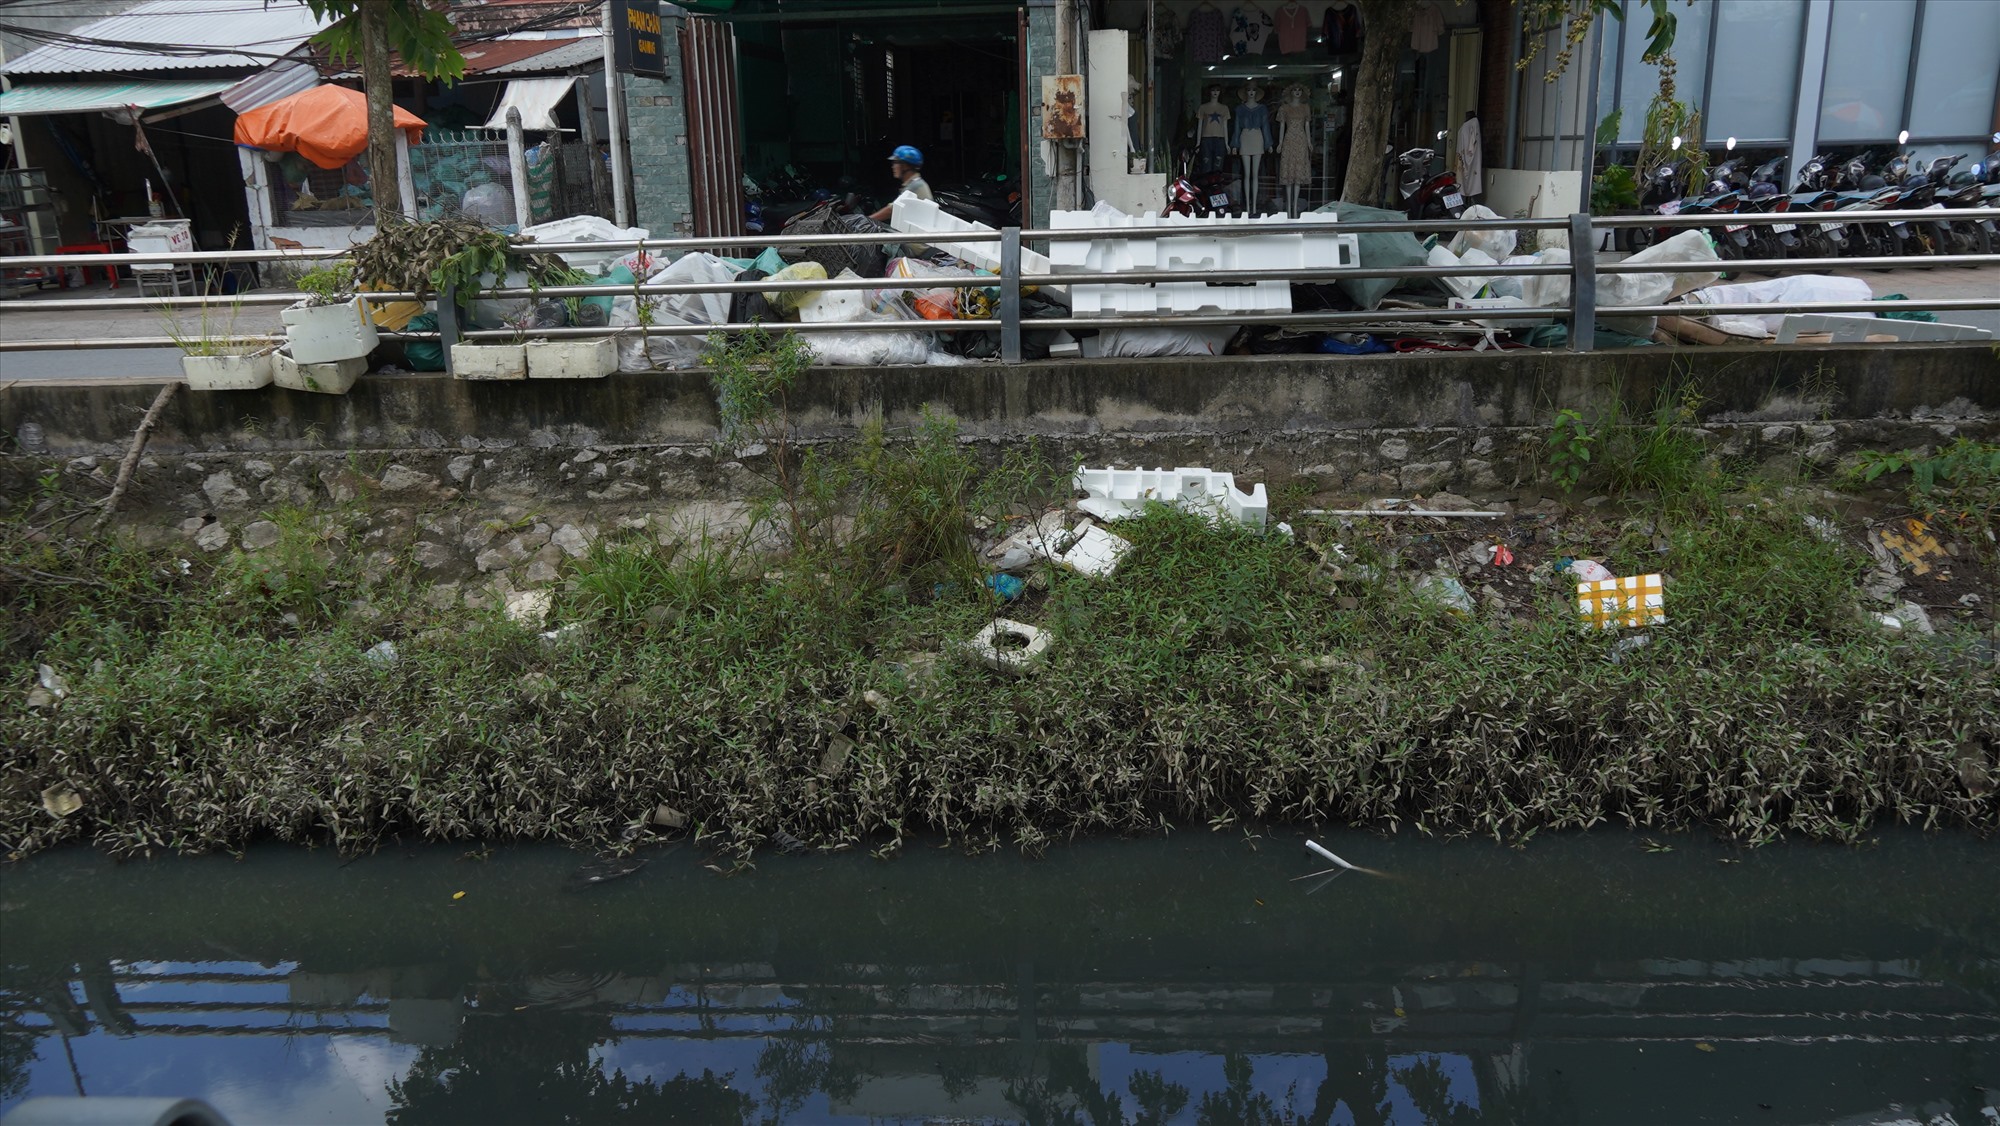 Theo khảo sát của phóng viên, tình trạng rác thải sinh hoạt vẫn bị người dân vứt bừa bãi trên đường, dưới dòng kênh, rạch, hồ. Đây có thể là một trong những nguyên nhân chính có thể dẫn tới dịch sốt xuất huyết bùng phát.